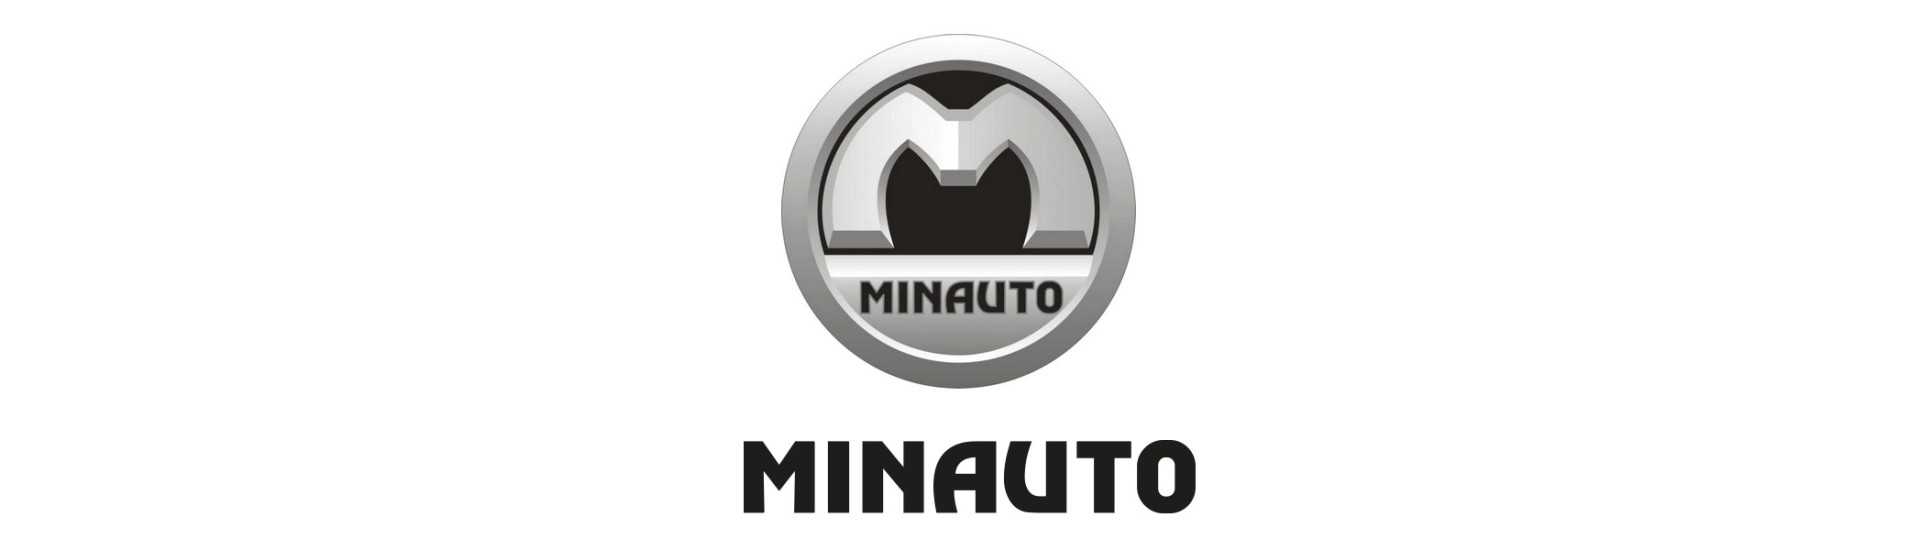 Feu de recul au meilleur prix pour voiture sans permis Minauto